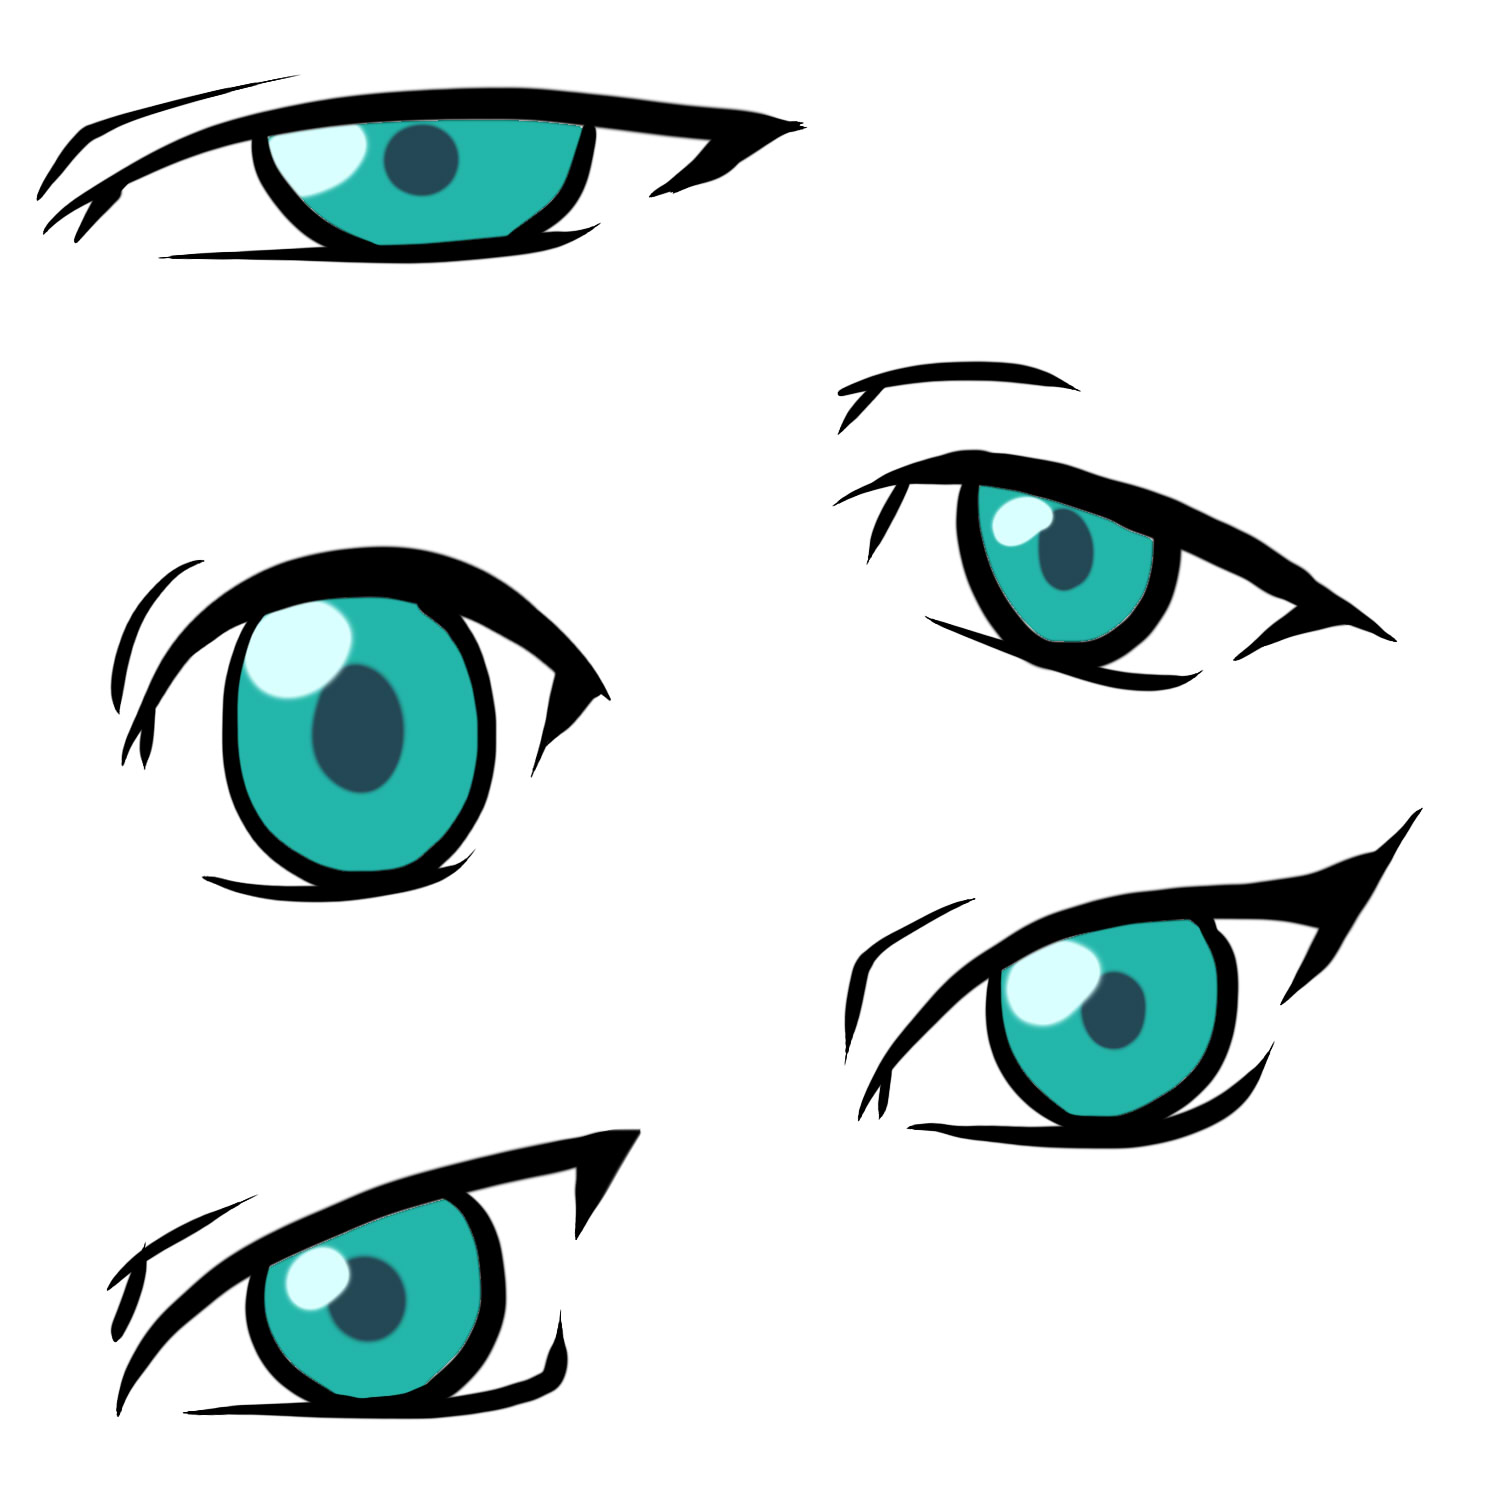 Adding style to Manga / Anime Eyes | Letraset Blog - Creative ...